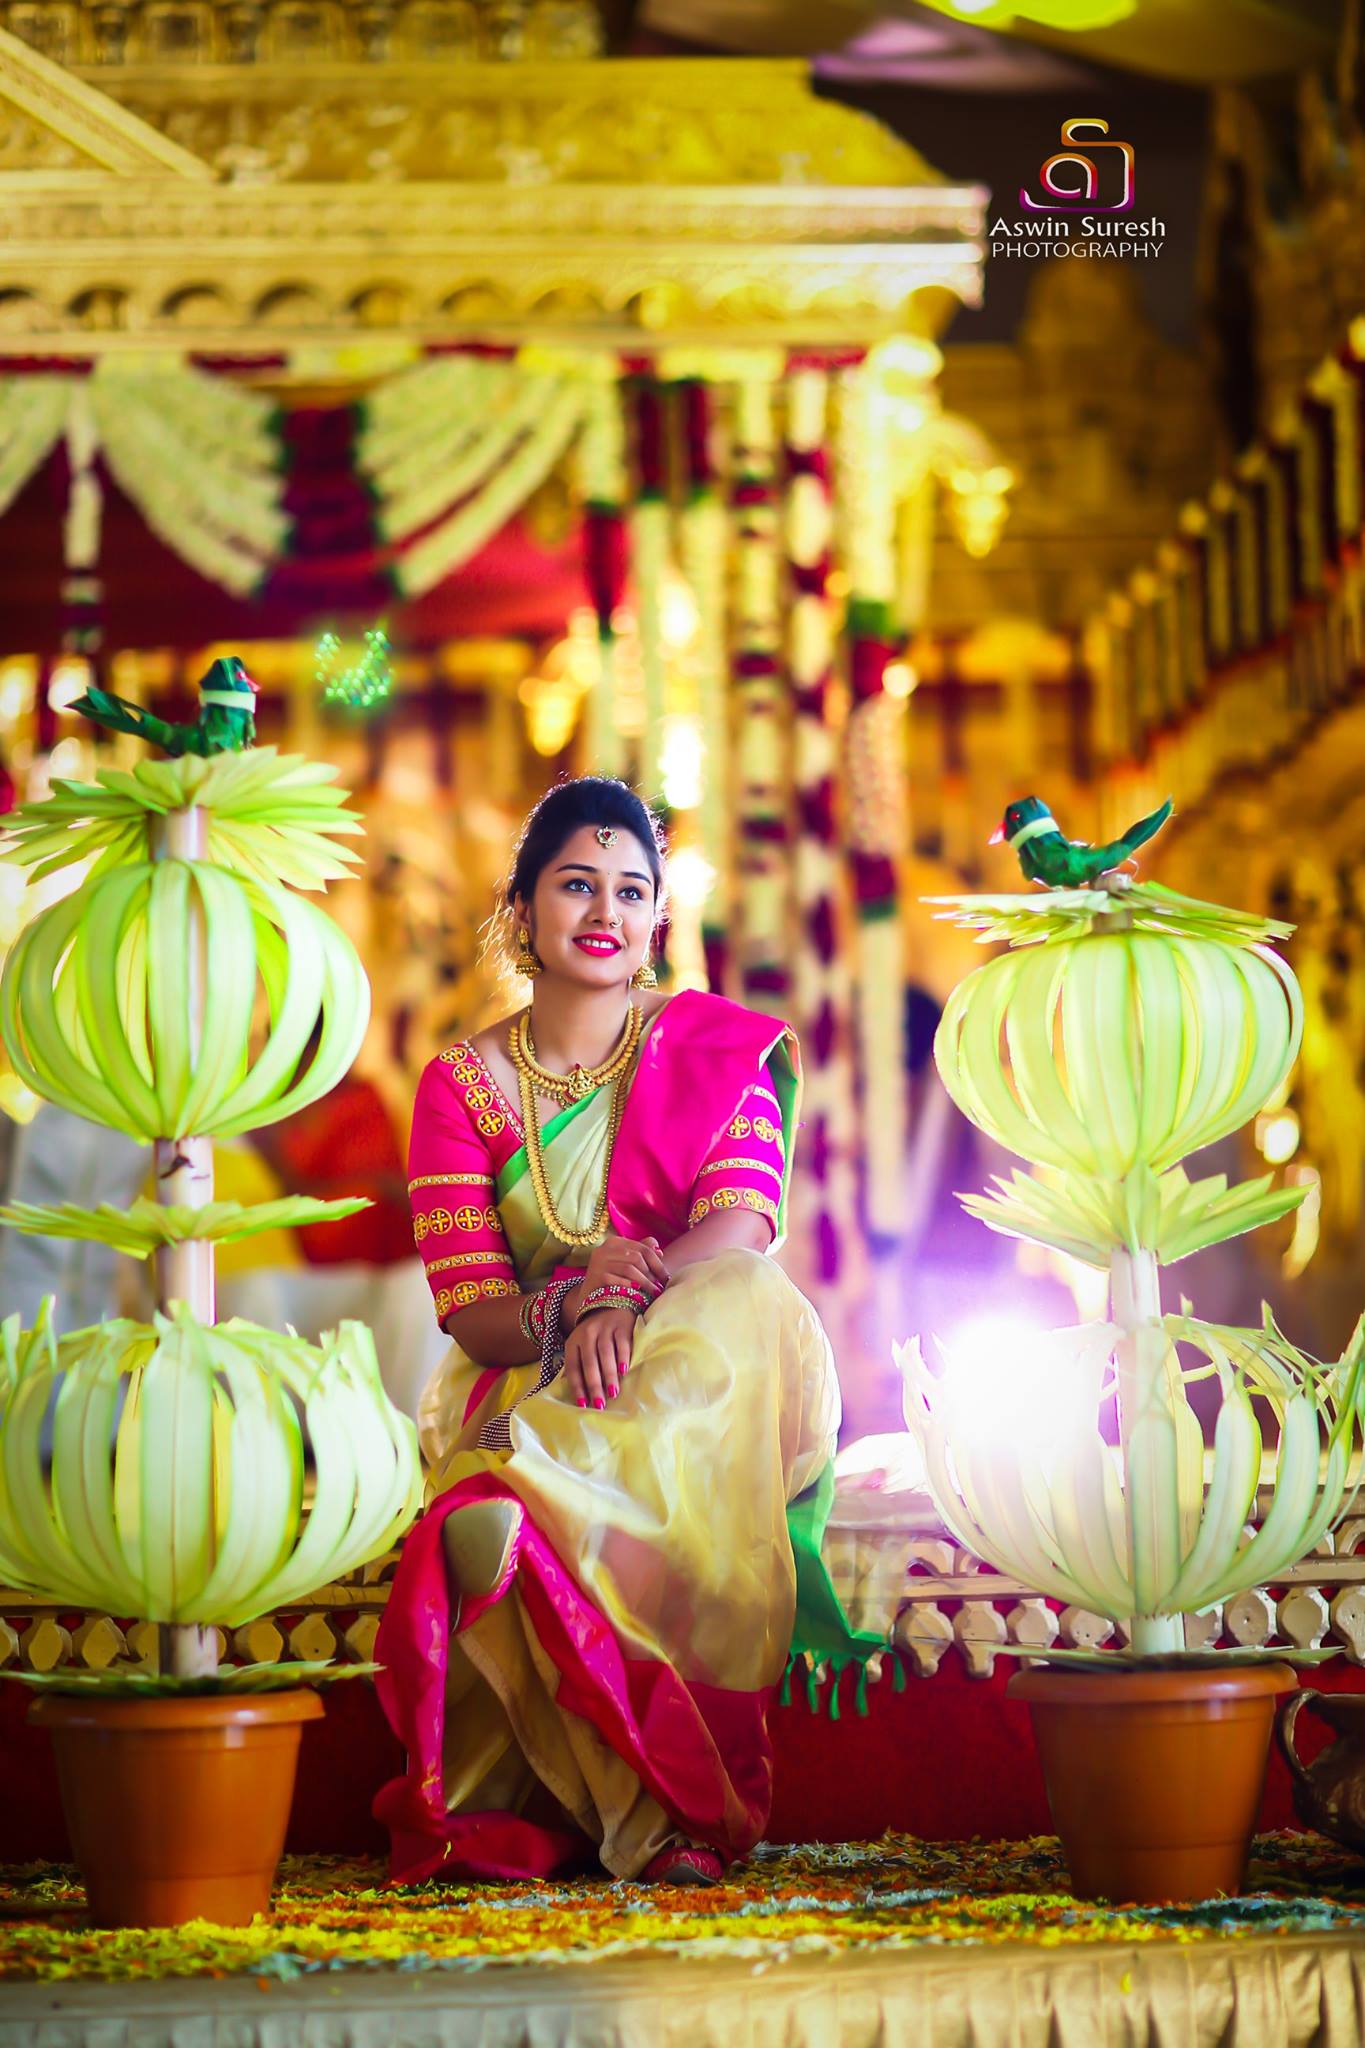  Wedding Images of Ashwin Suresh Photography-img8